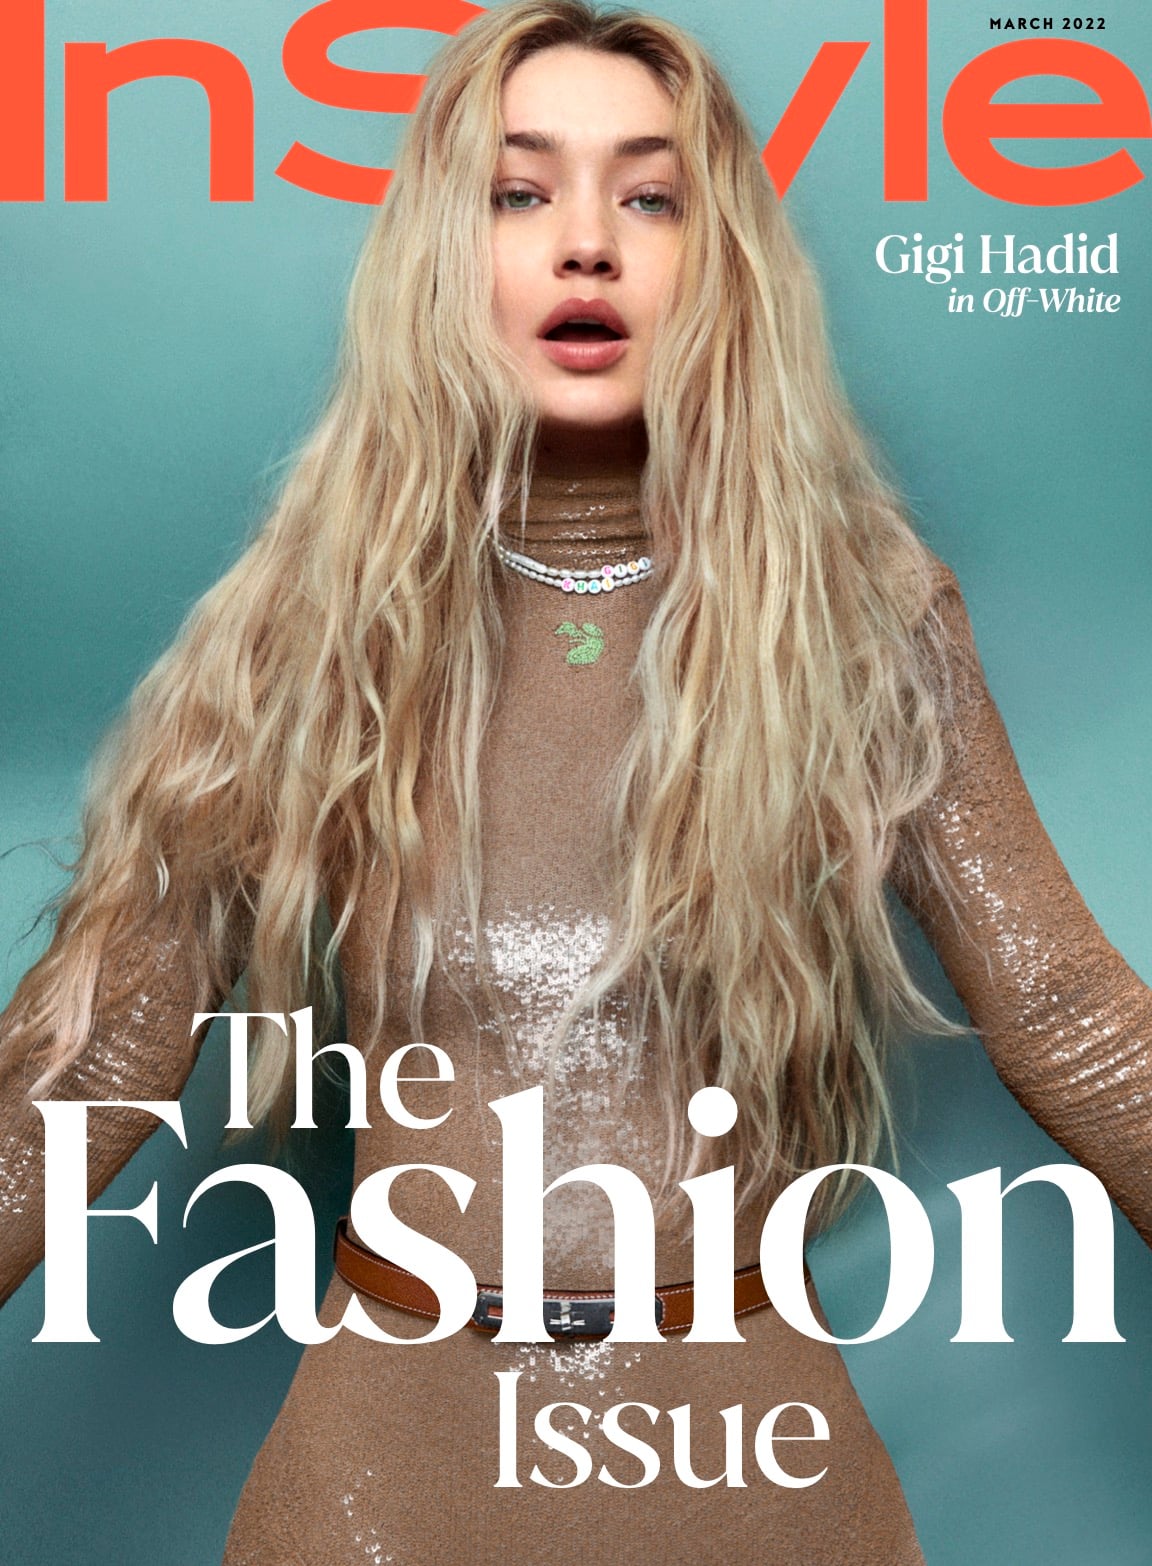 Gigi Hadid debuts 'Khai' necklace at Milan Fashion Week